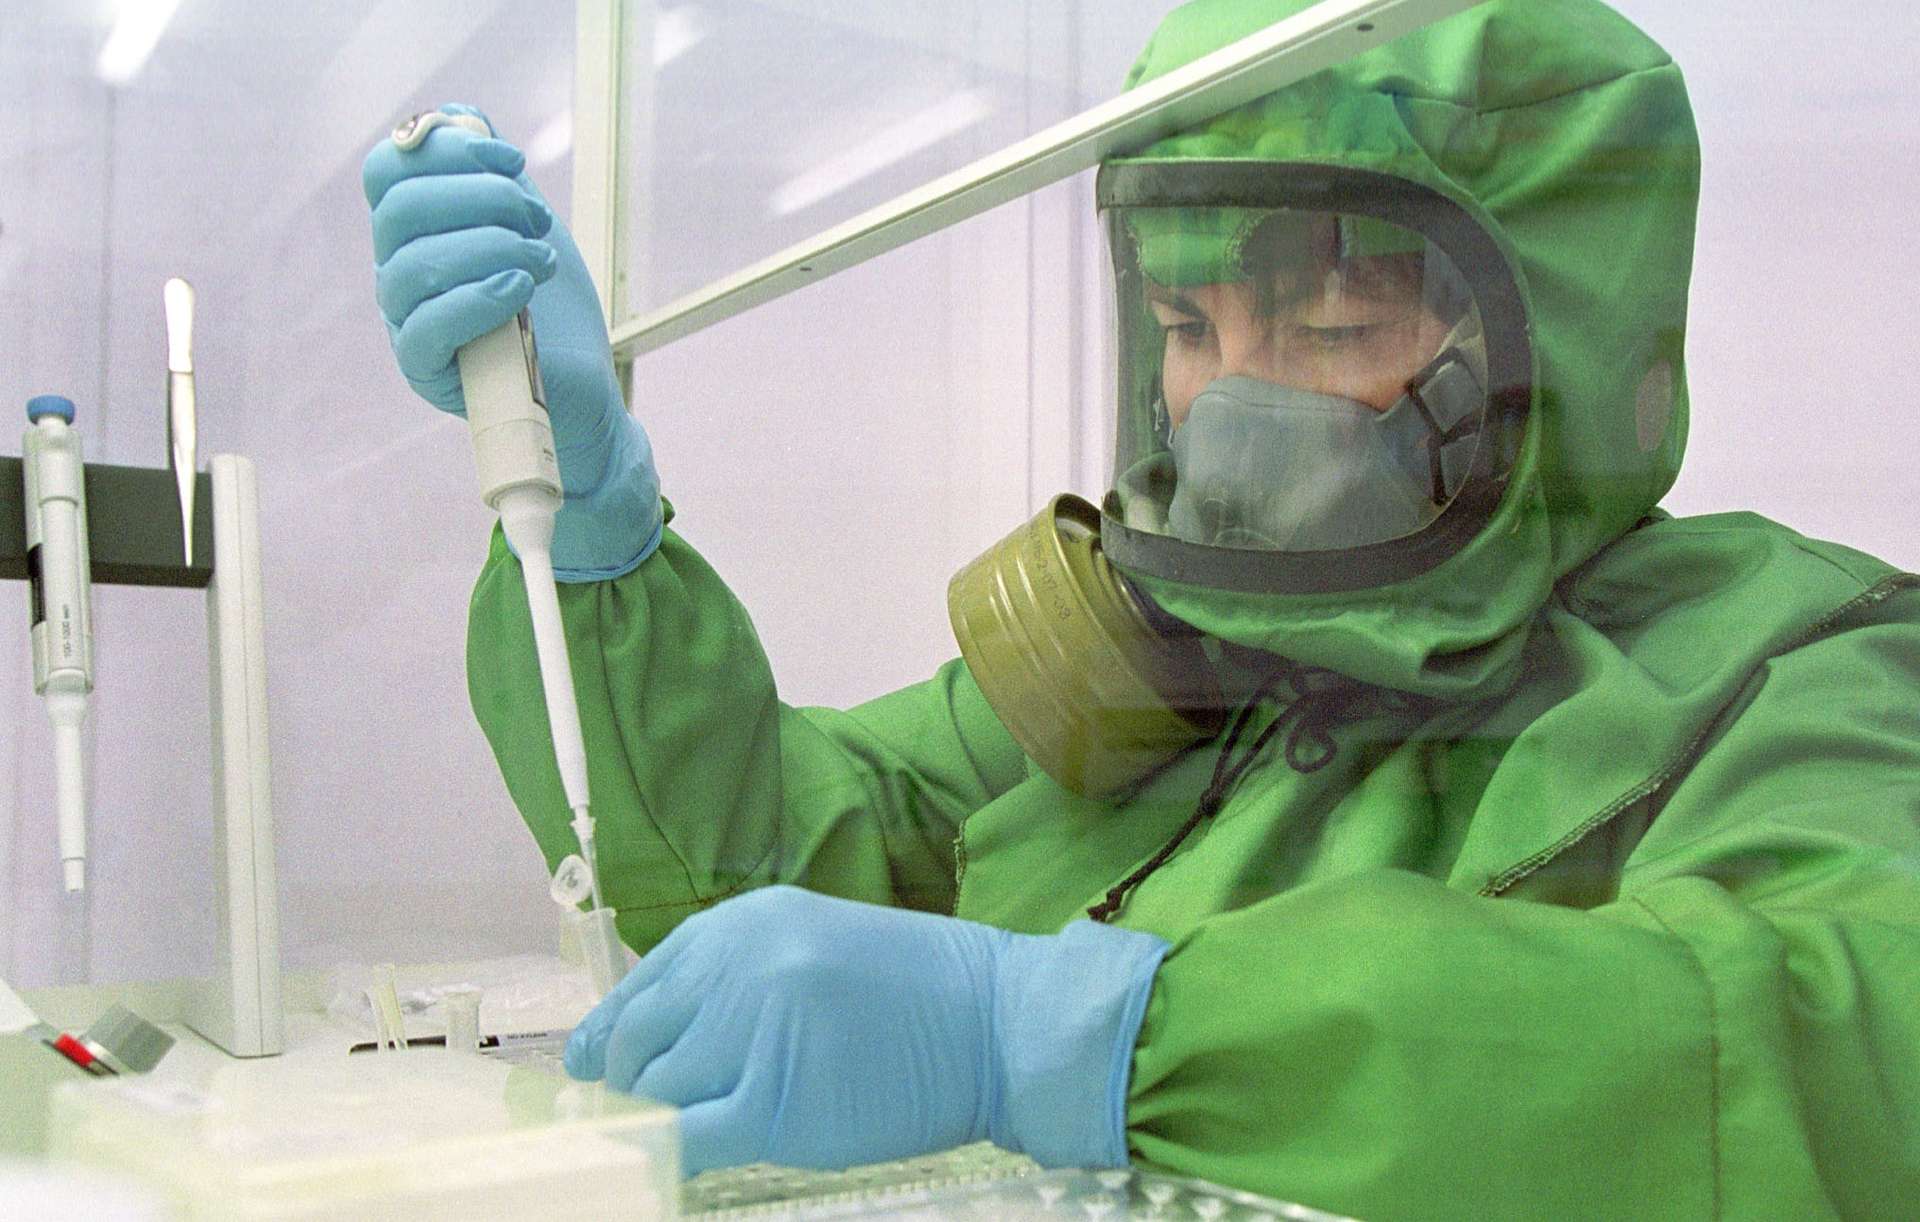 Новосибирские ученые завершили испытания вакцины против лихорадки Эбола